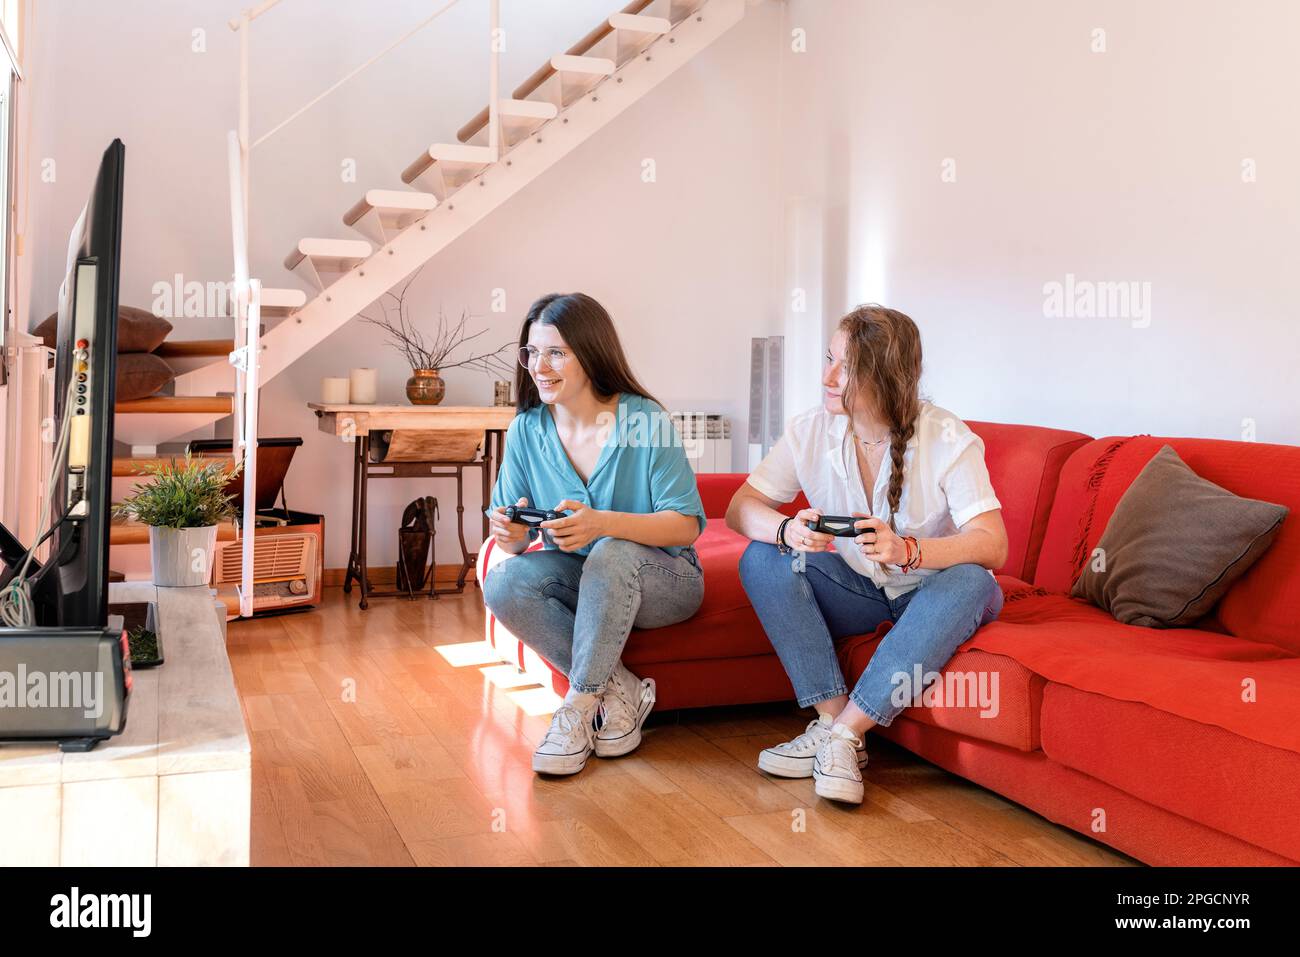 Des jeunes amies joyeuses se détendent sur un confortable canapé rouge avec manettes de jeu vidéo en mains et regardant l'écran de la console de télévision pendant que pla Banque D'Images